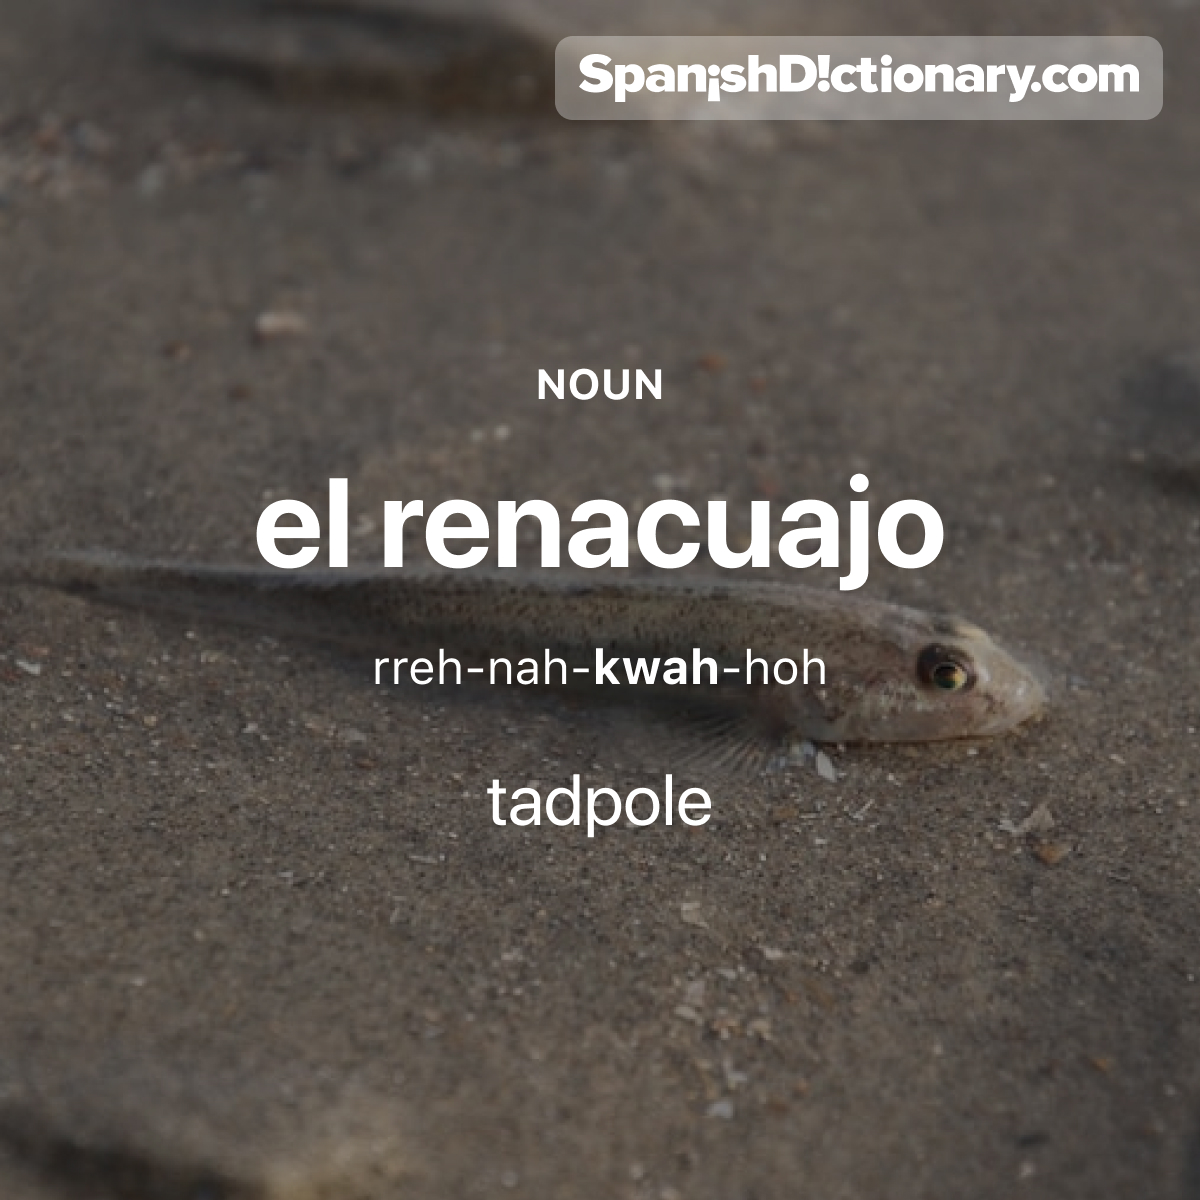 Today's #WordOfTheDay is 'renacuajo.' 🐸 For example: Este renacuajo se convertirá pronto en una rana. - This tadpole will turn into a frog soon.
.
.
.
#EstudiaEspañol #StudySpanish #AprendeEspañol #LearnSpanish #Español #Spanish #LearningSpanish #PalabraDelDia #renacuajo